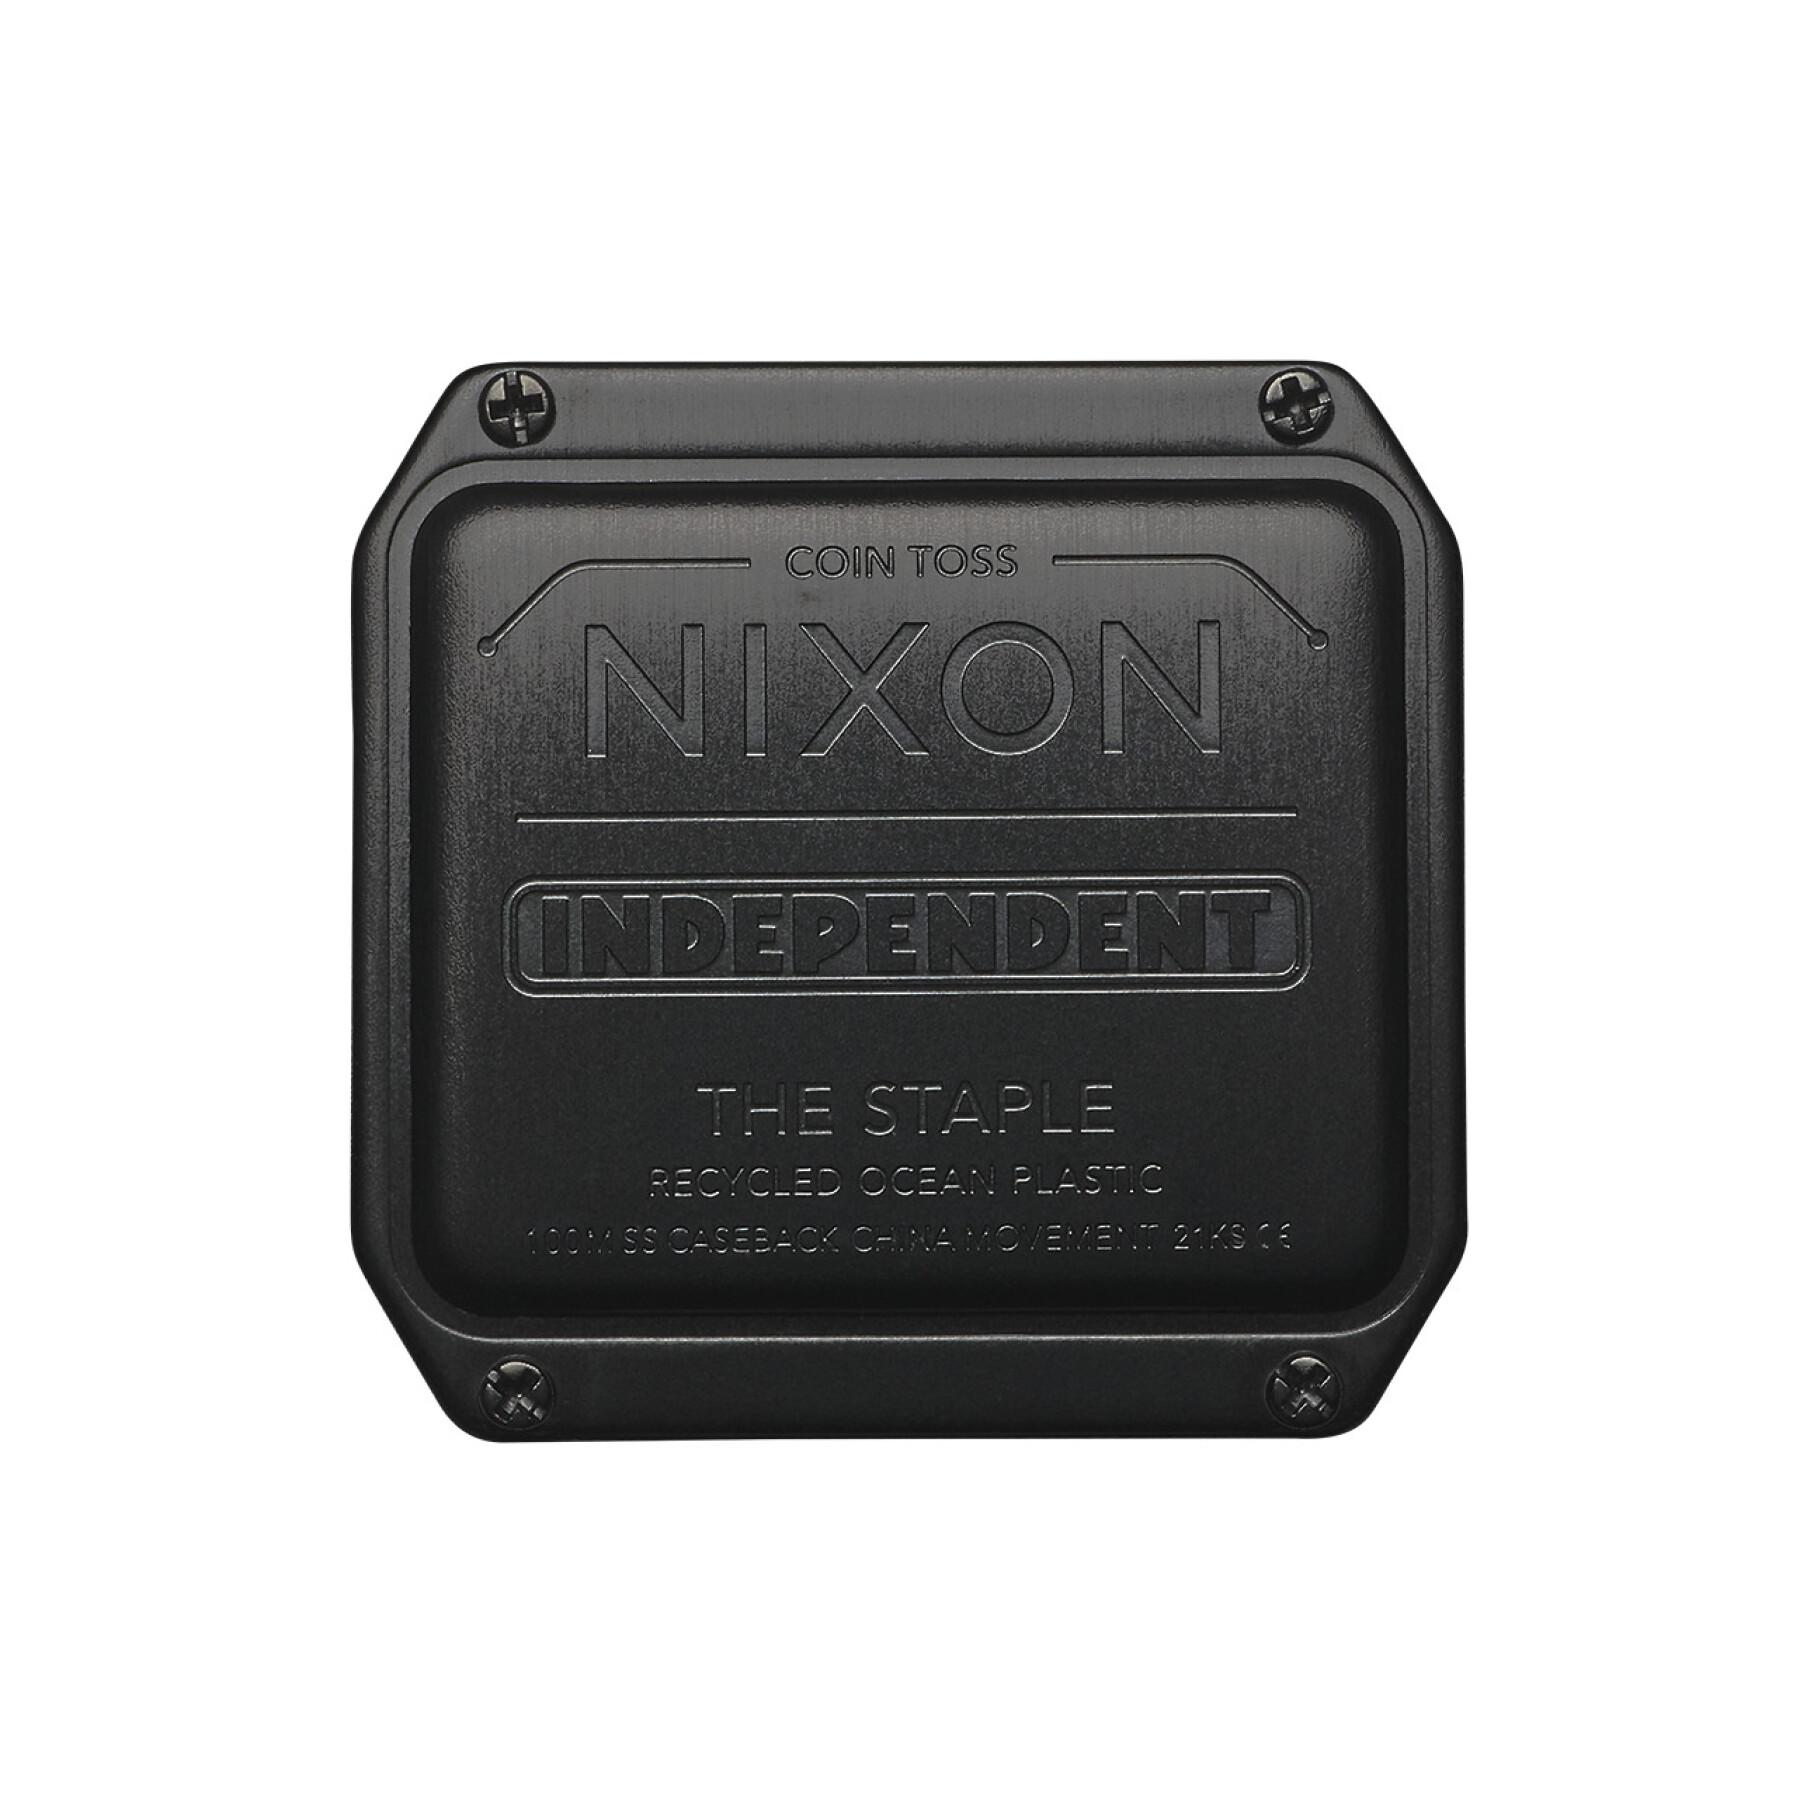 Uhr Nixon Independent Staple